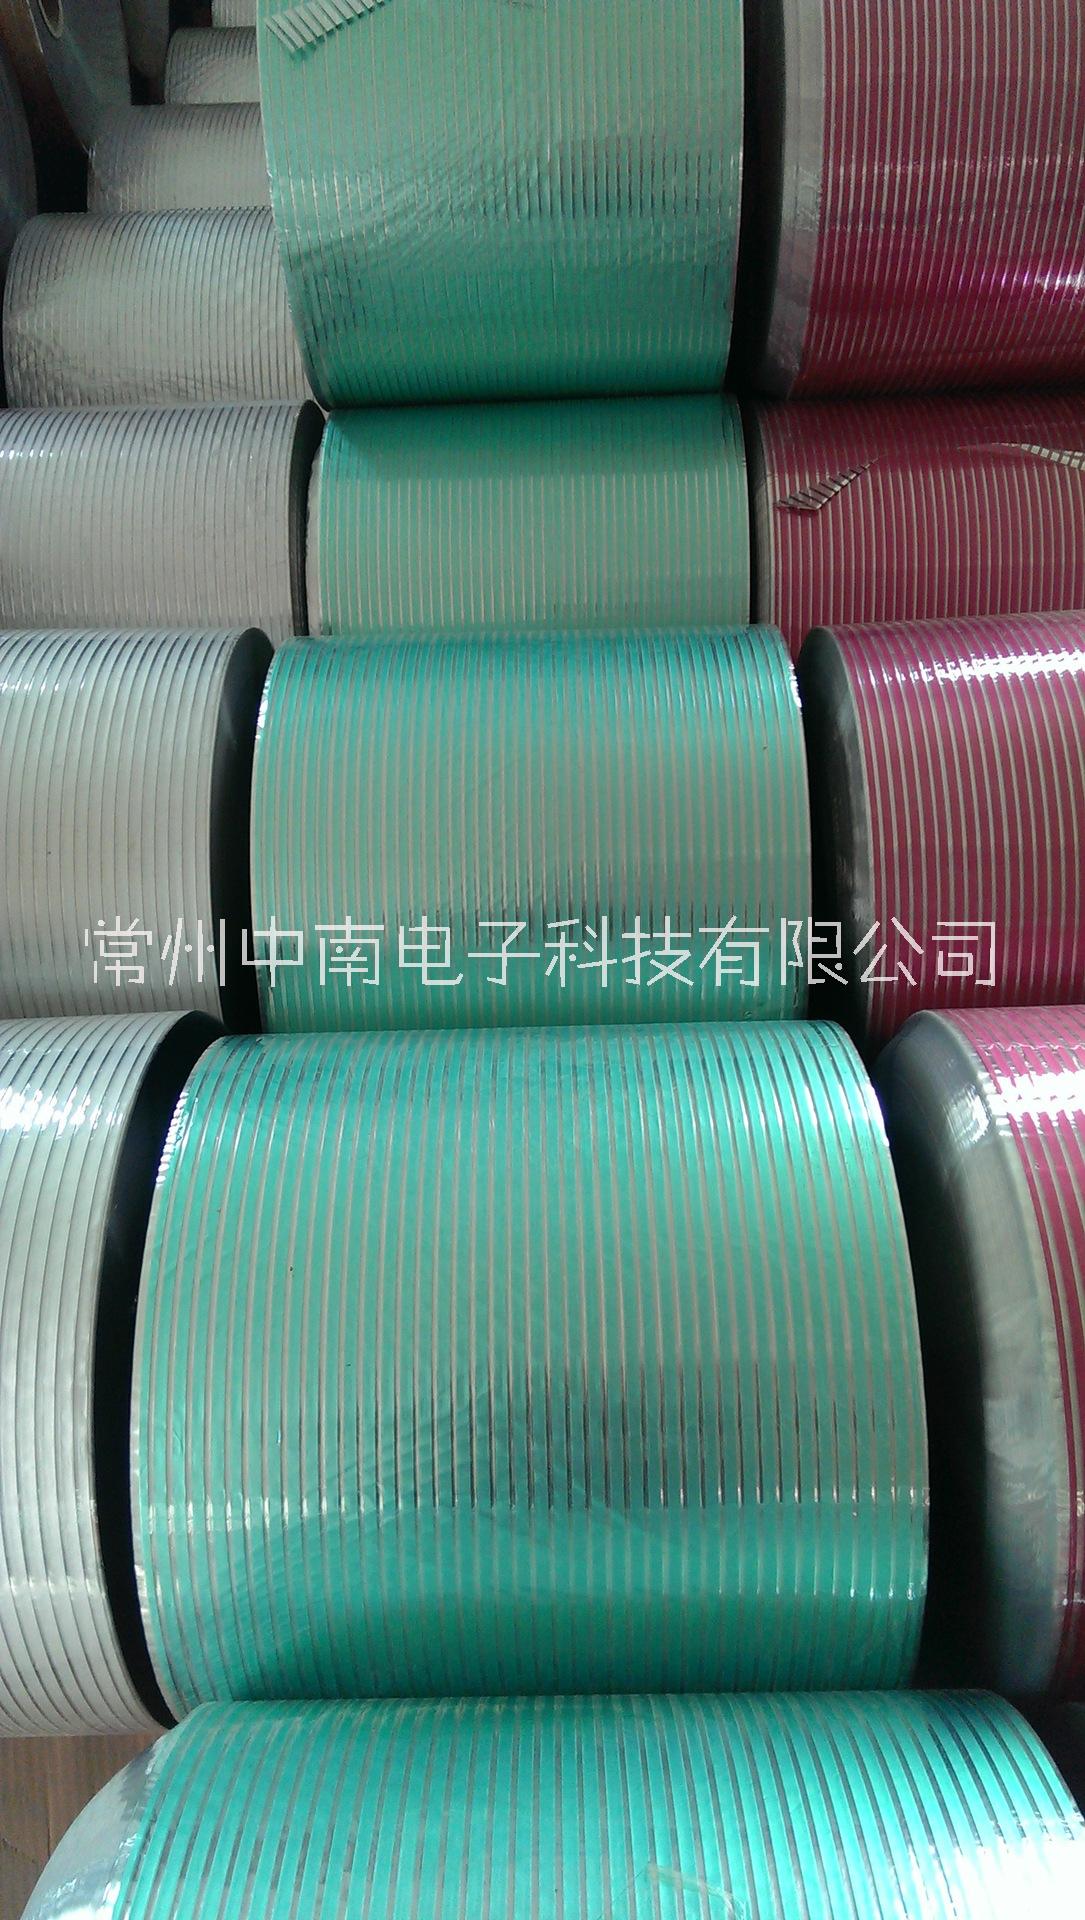 线缆绕包材料 展翅铝箔麦拉带铝箔麦拉带 规格多样可定制 展翅铝箔麦拉带